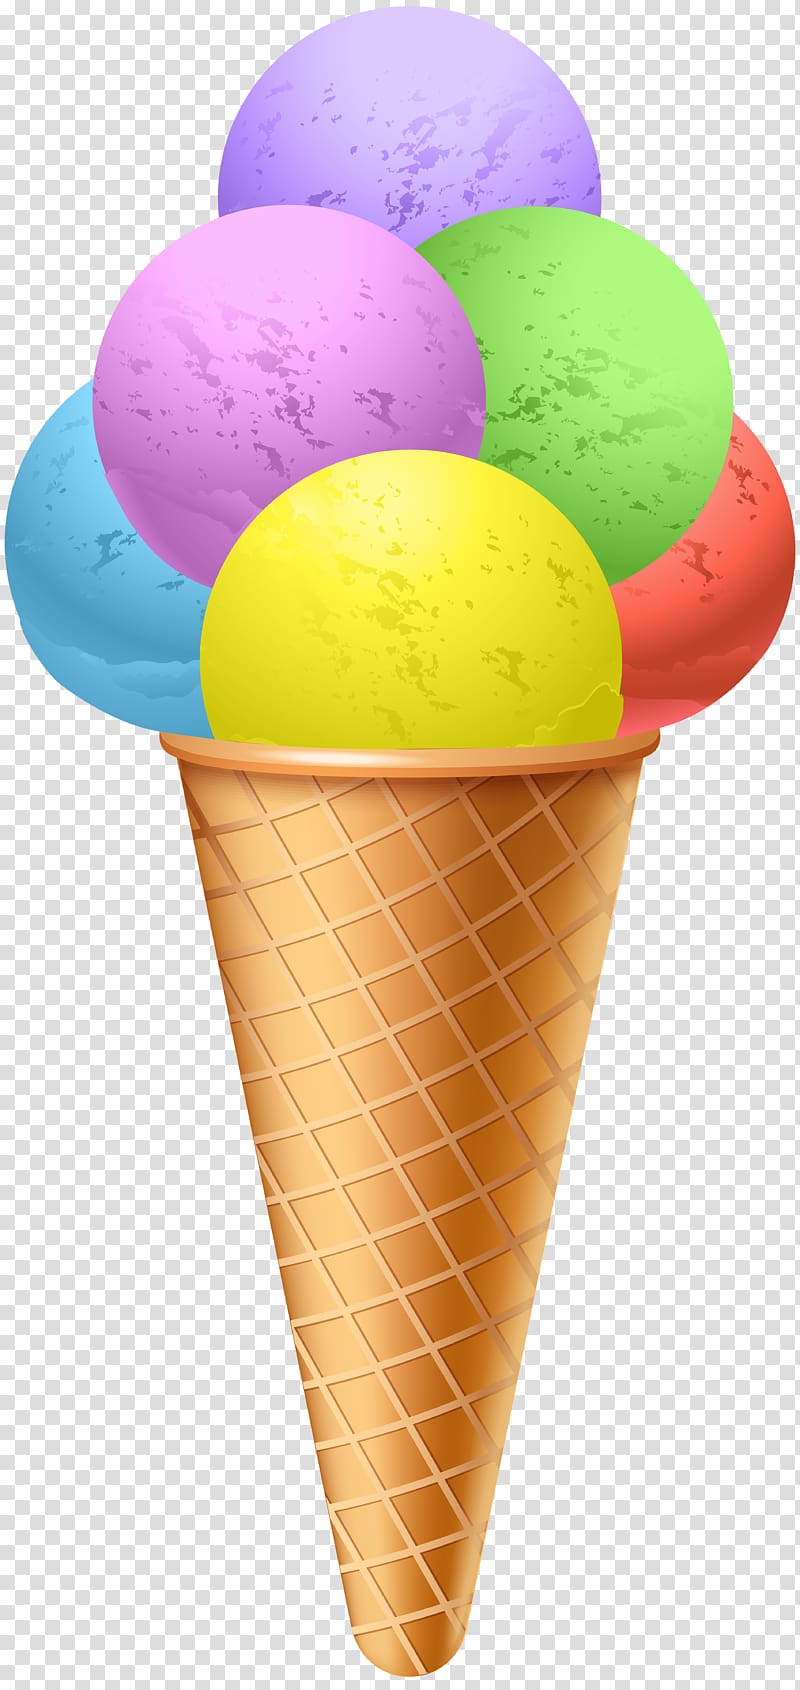 Ice cream cone Sundae Chocolate ice cream, Ice Cream transparent background PNG clipart